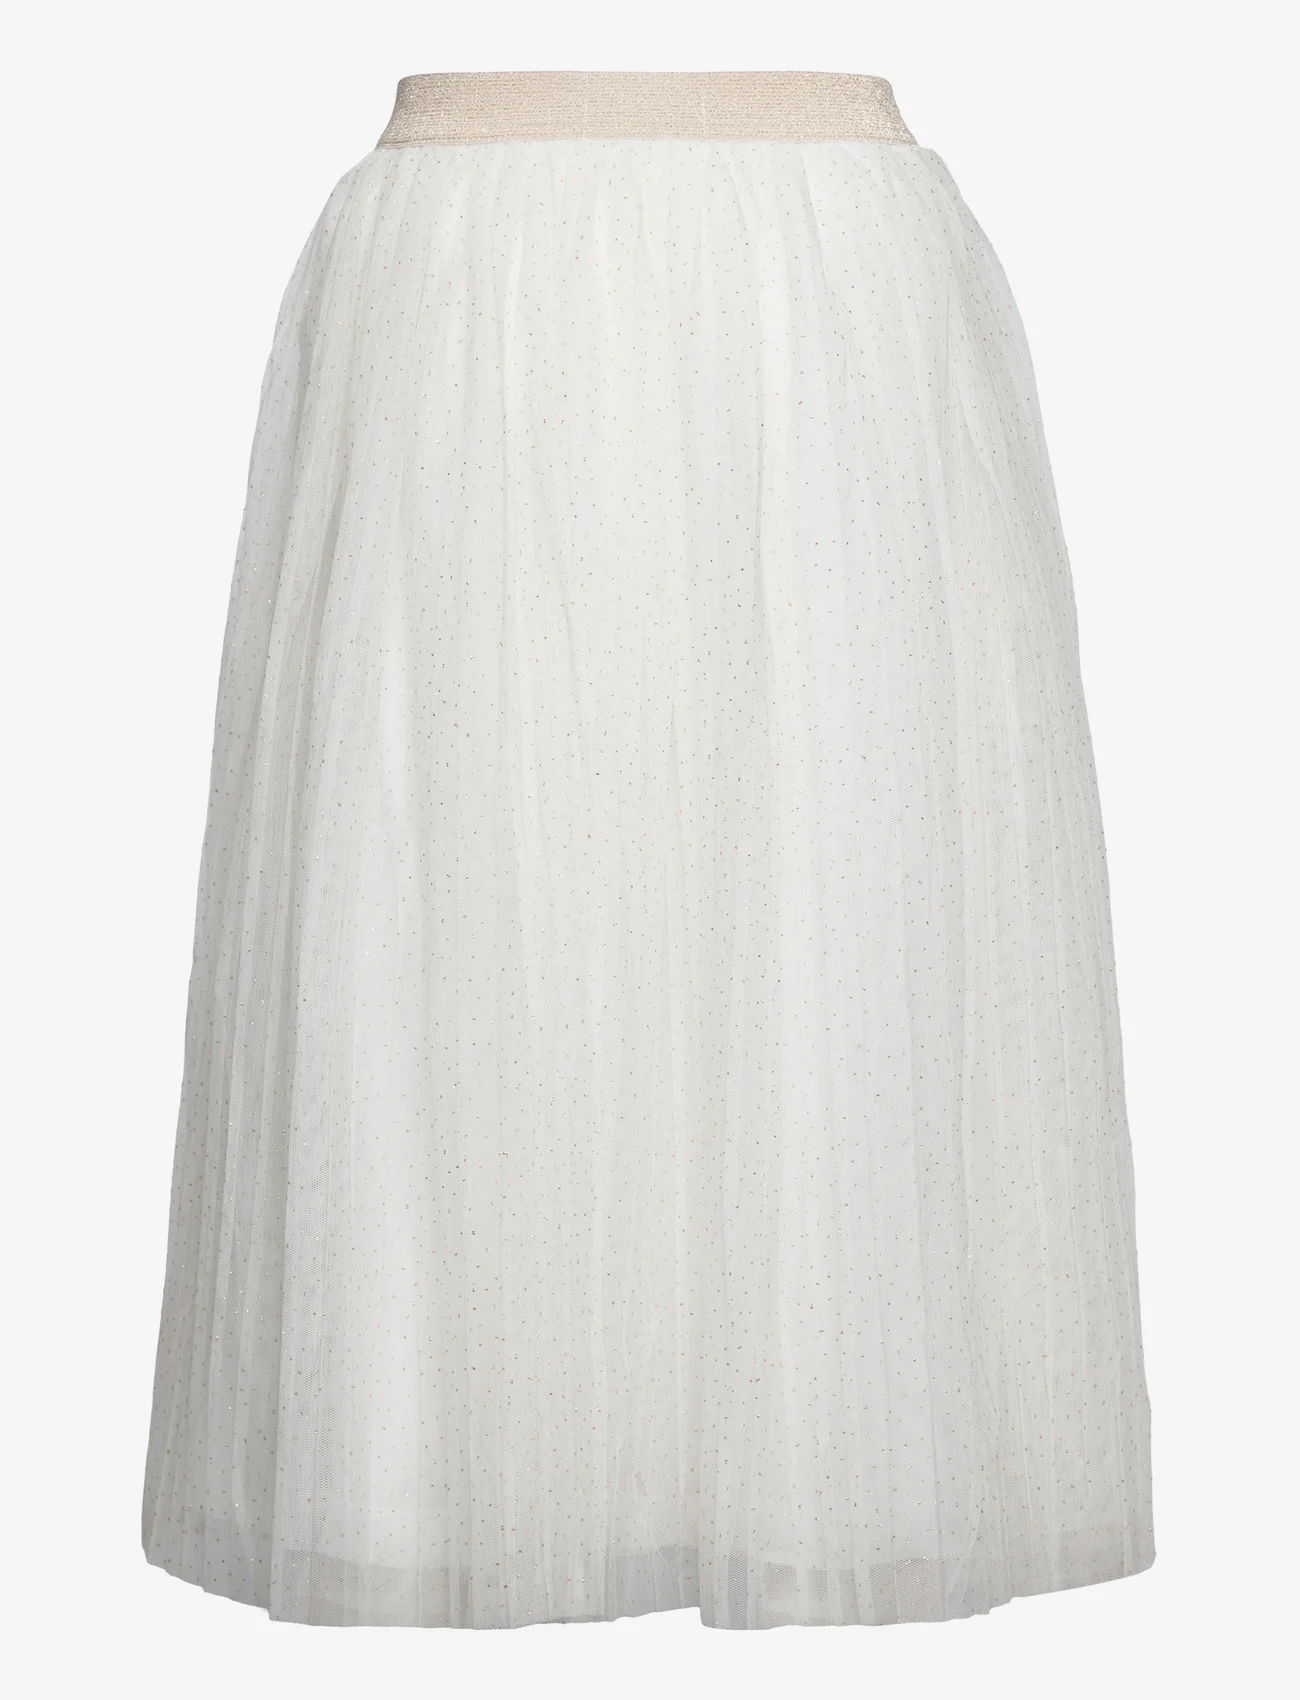 Mango - Glitter tulle skirt - natural white - 1